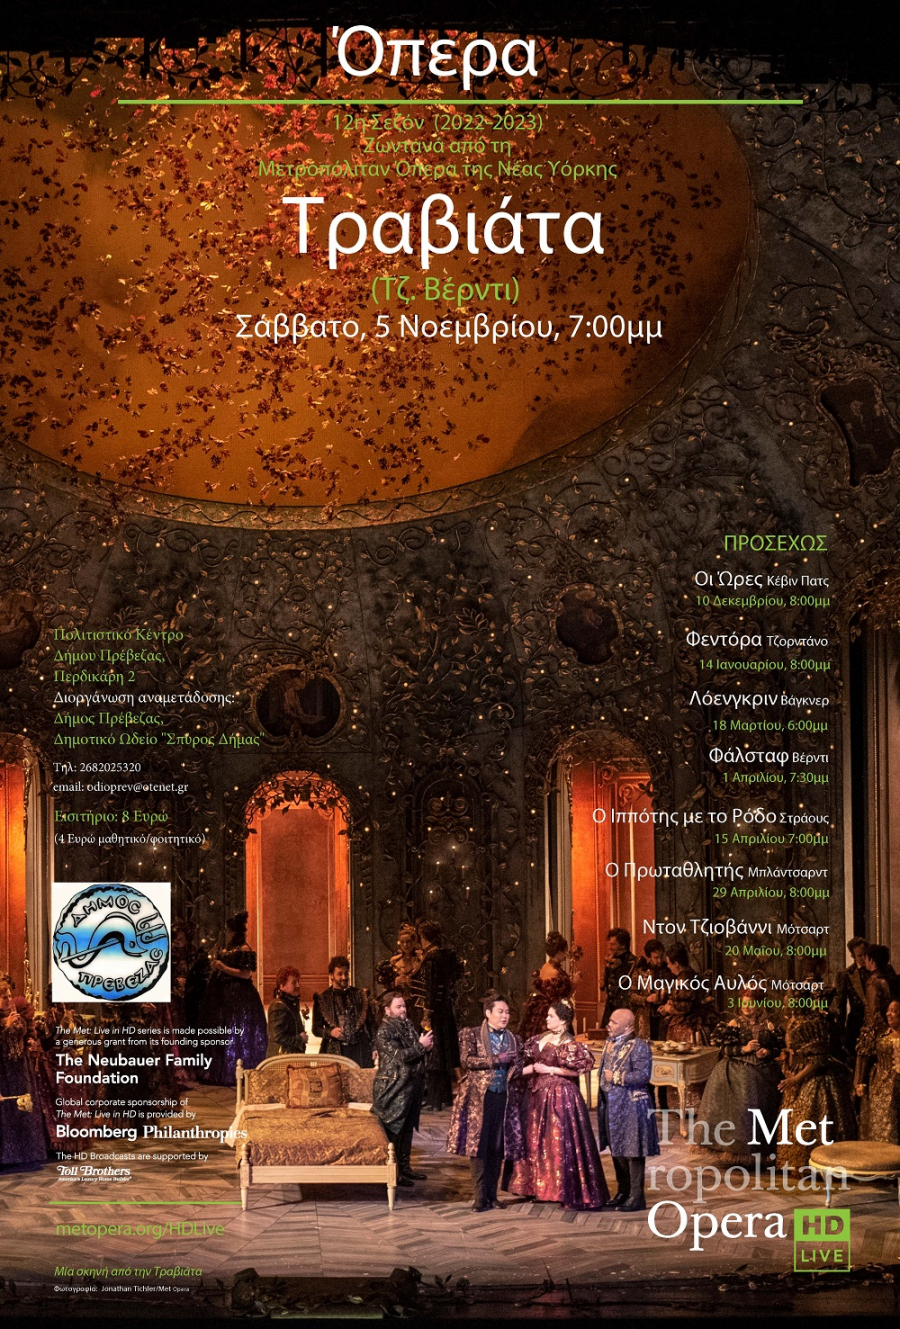 Με την "Τραβιάτα" του Βέρντι συνεχίζονται οι μεταδόσεις της Metropolitan Opera στο Πολιτιστικό Κέντρο Πρέβεζας